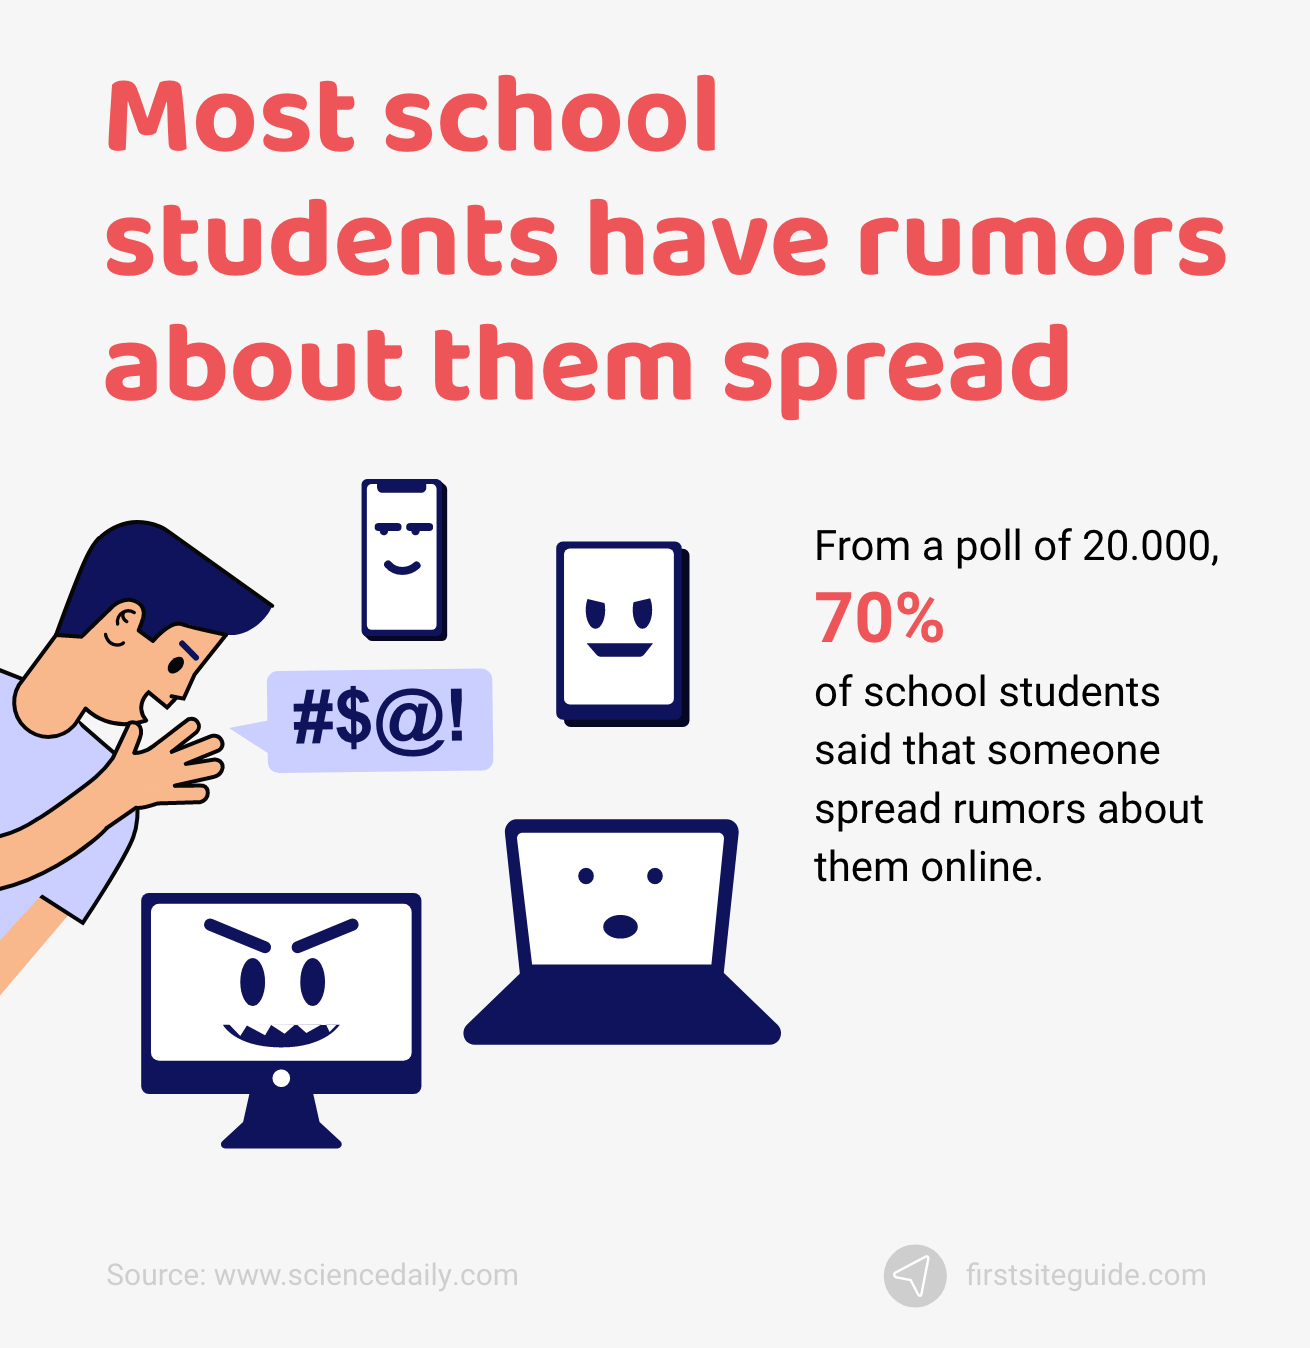 La mayoría de los estudiantes de la escuela tienen rumores sobre ellos difundidos en línea